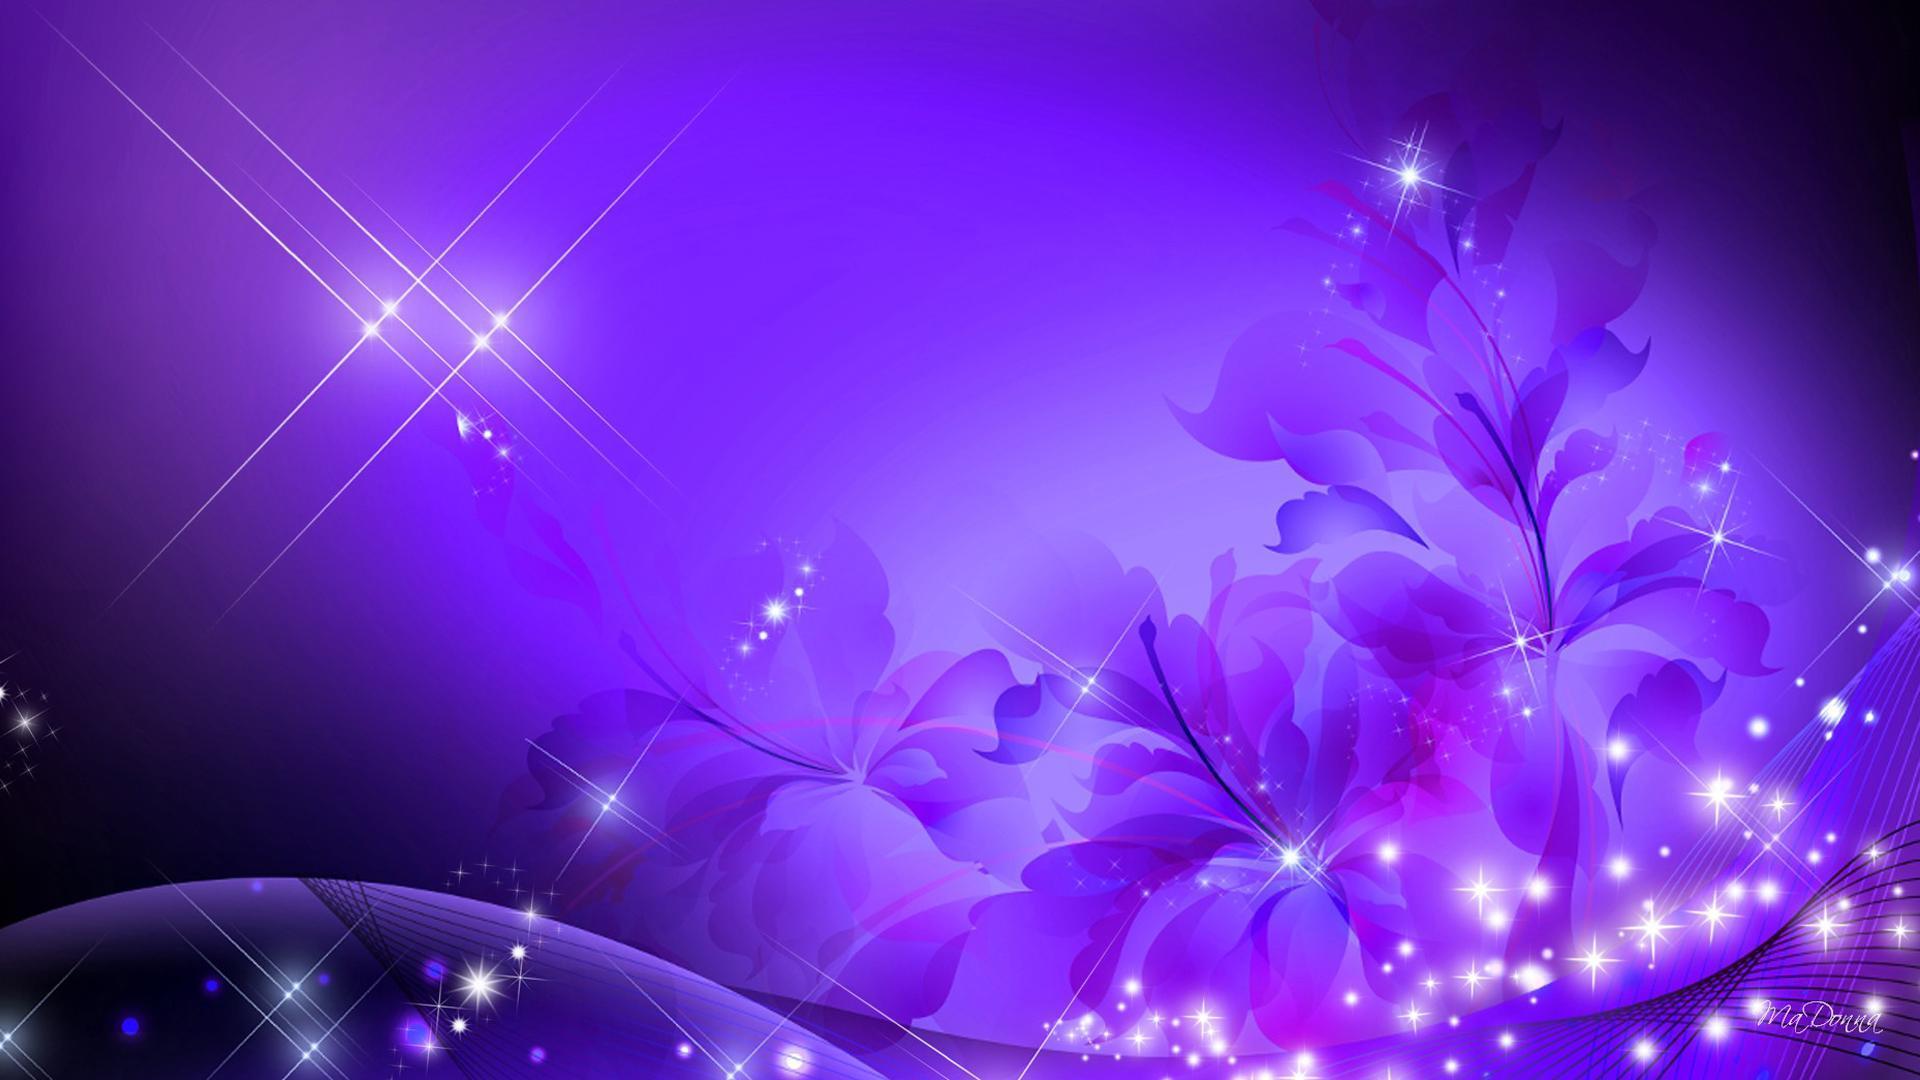 Glorious Purple HD desktop wallpaper, Widescreen, High